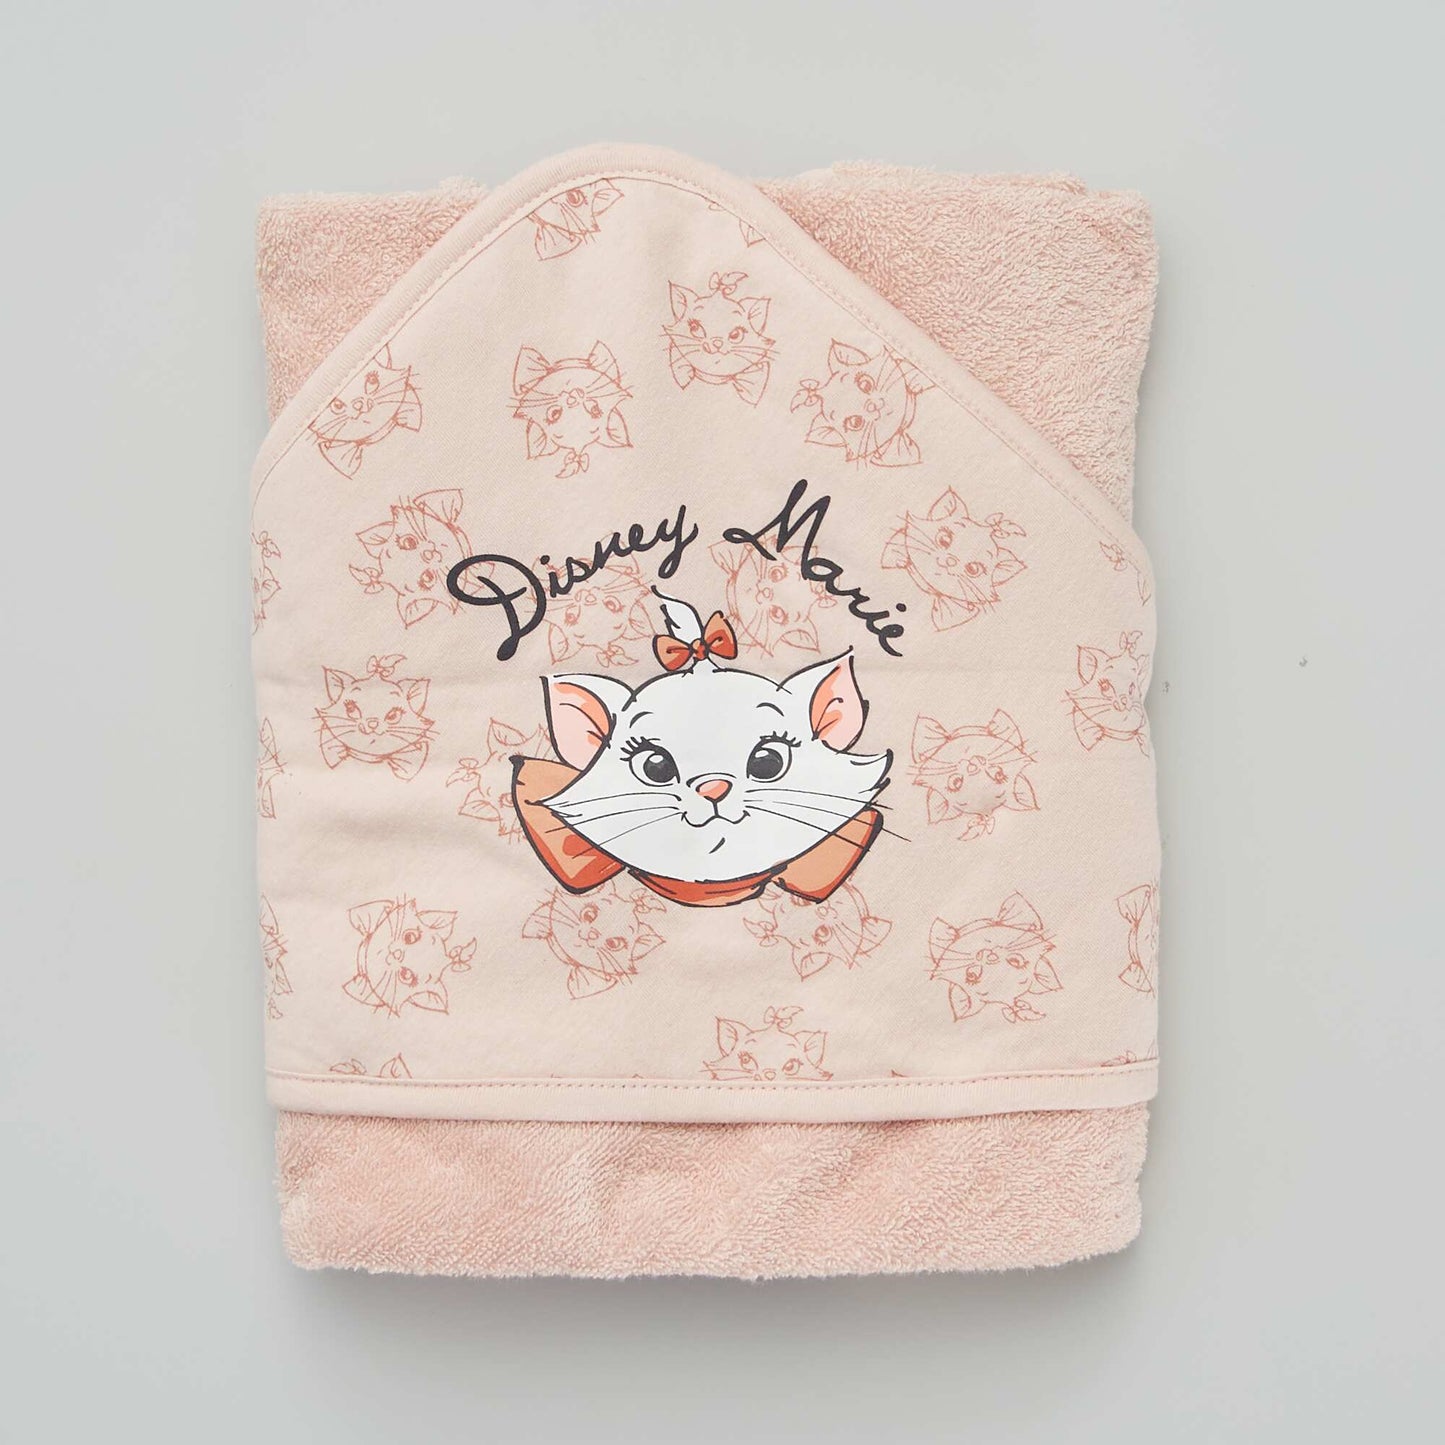 'Disney' hooded bath towel PINK